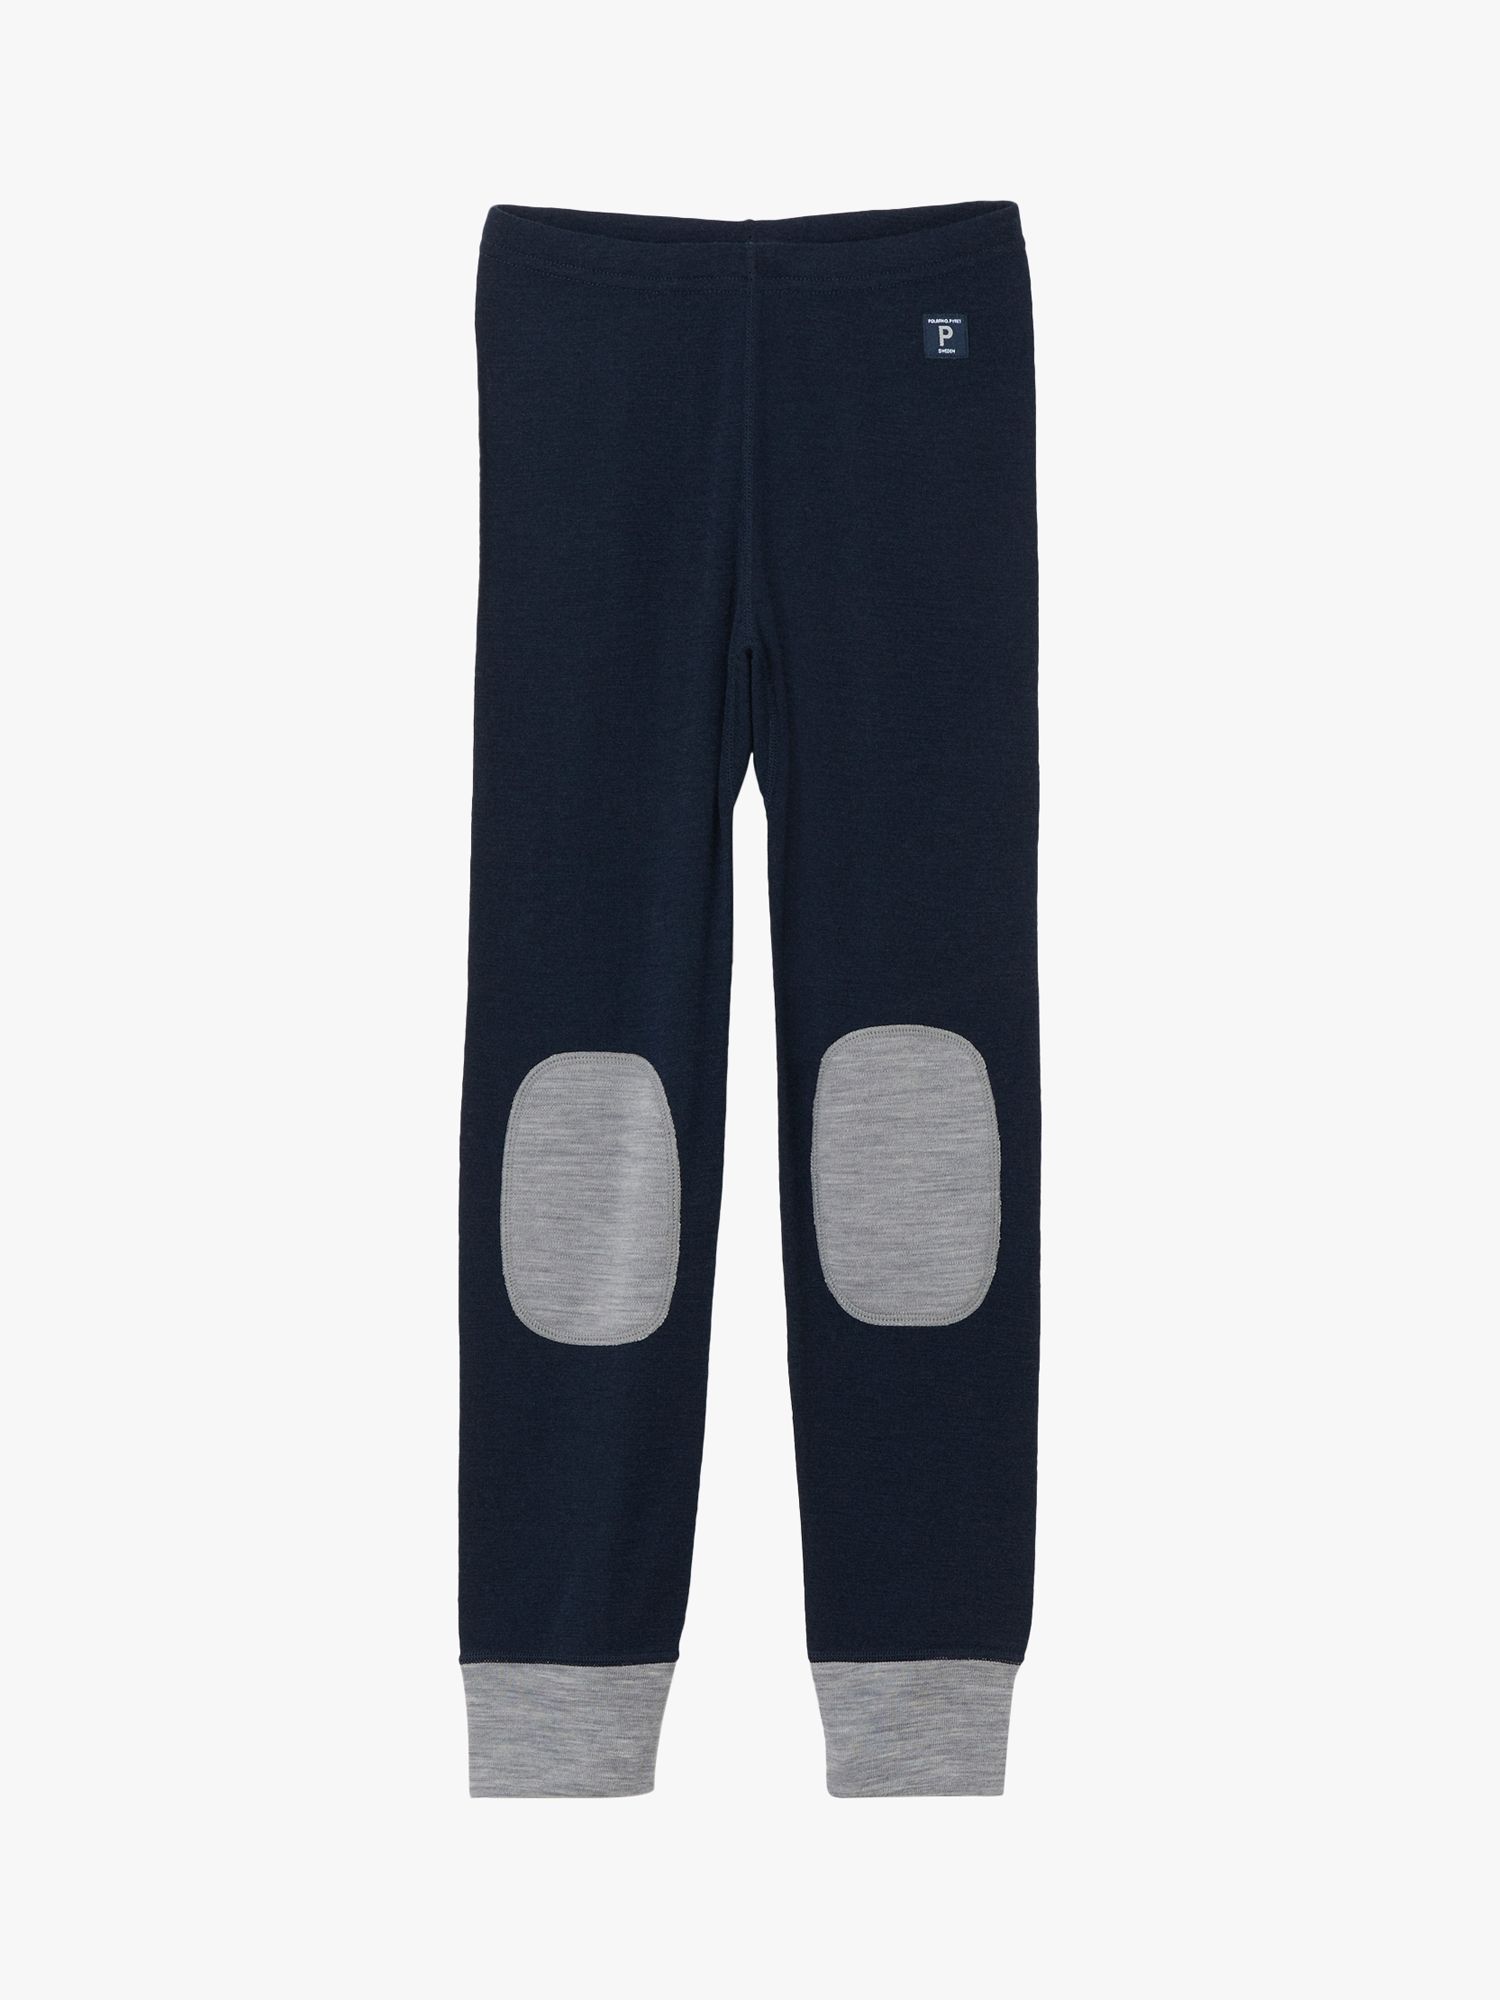 Детские брюки до колена контрастного цвета из шерсти мериноса Polarn O. Pyret, серо-голубой брюки o stin 42 размер